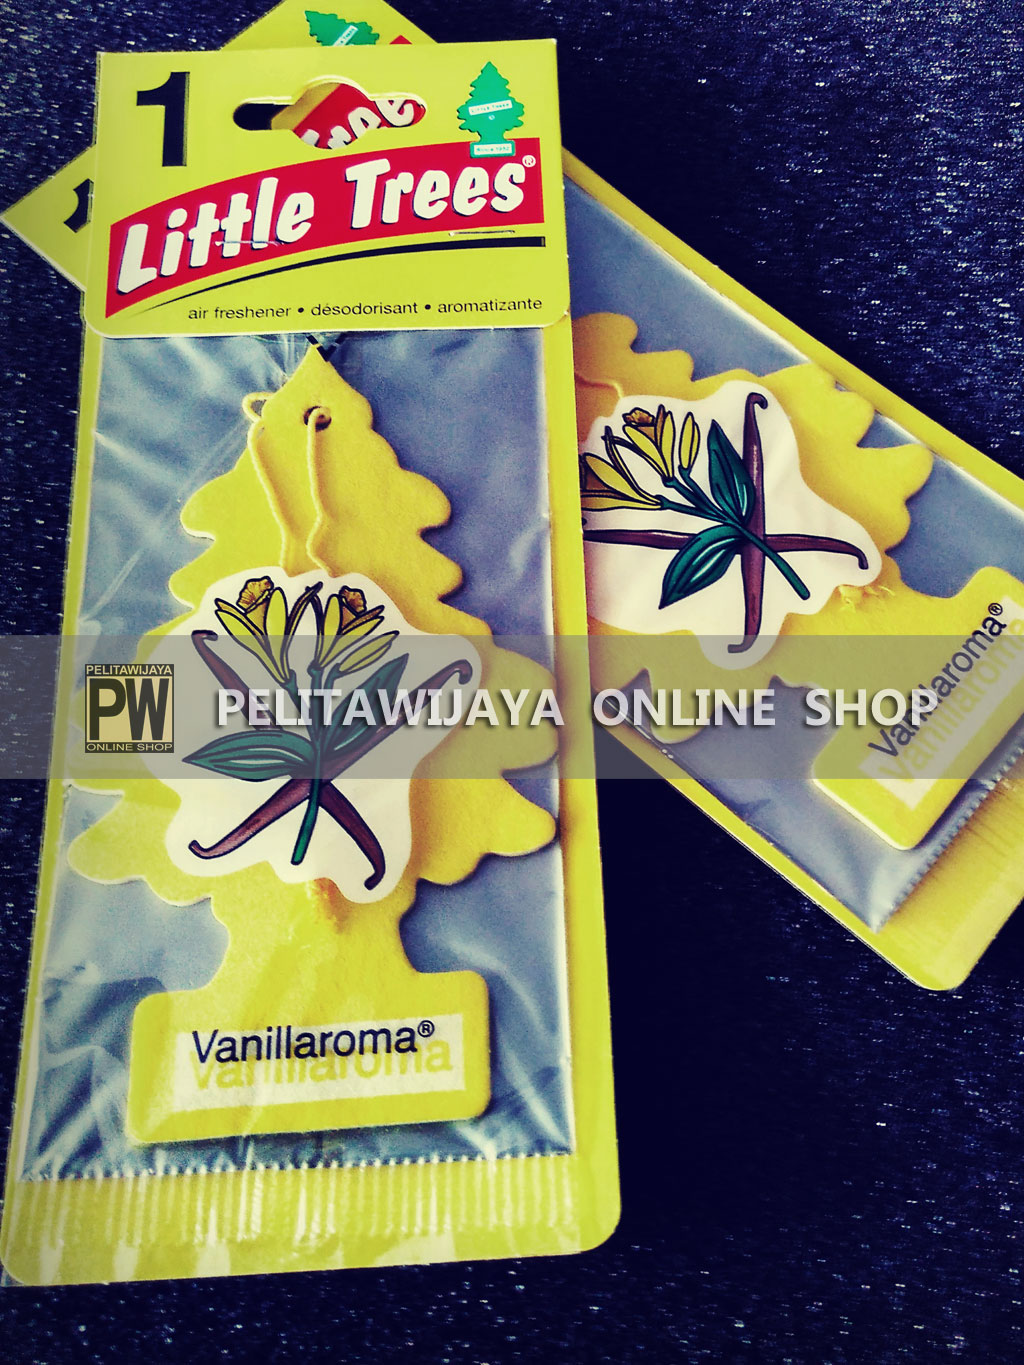 Pengharum Little-Trees-Vanillaroma